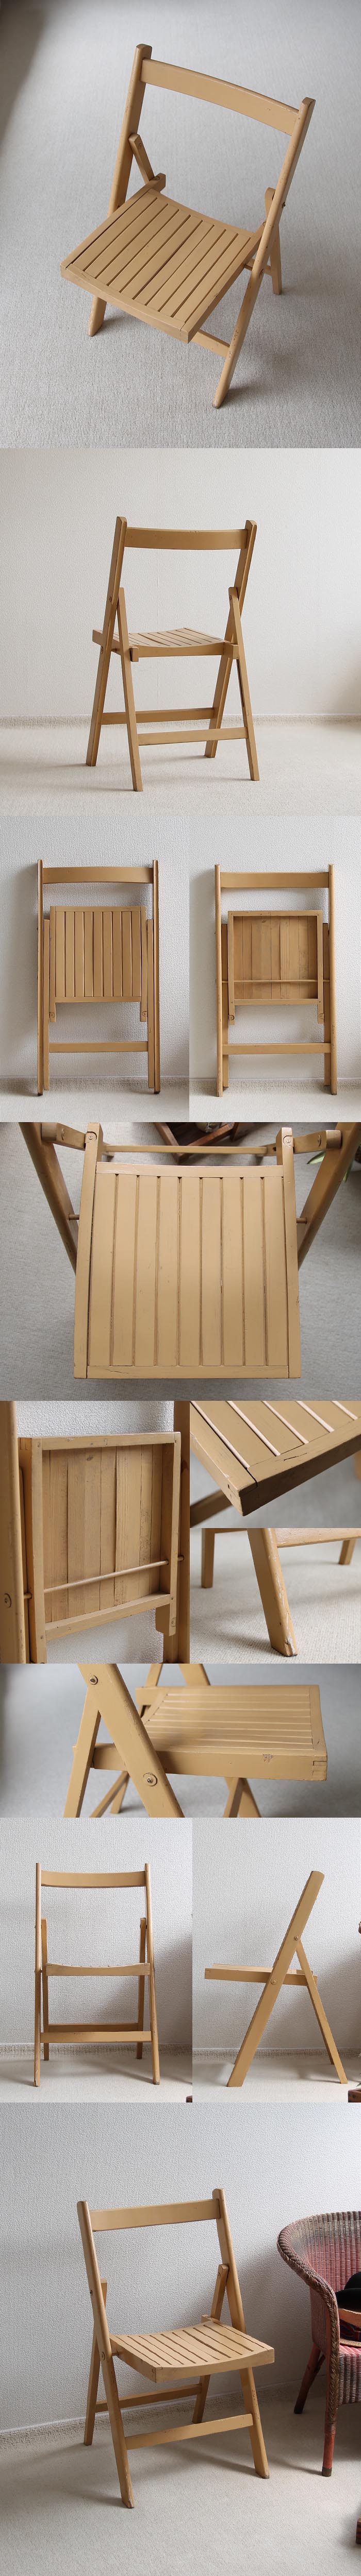 イギリス アンティーク フォールディングチェア/折りたたみ椅子/木製 